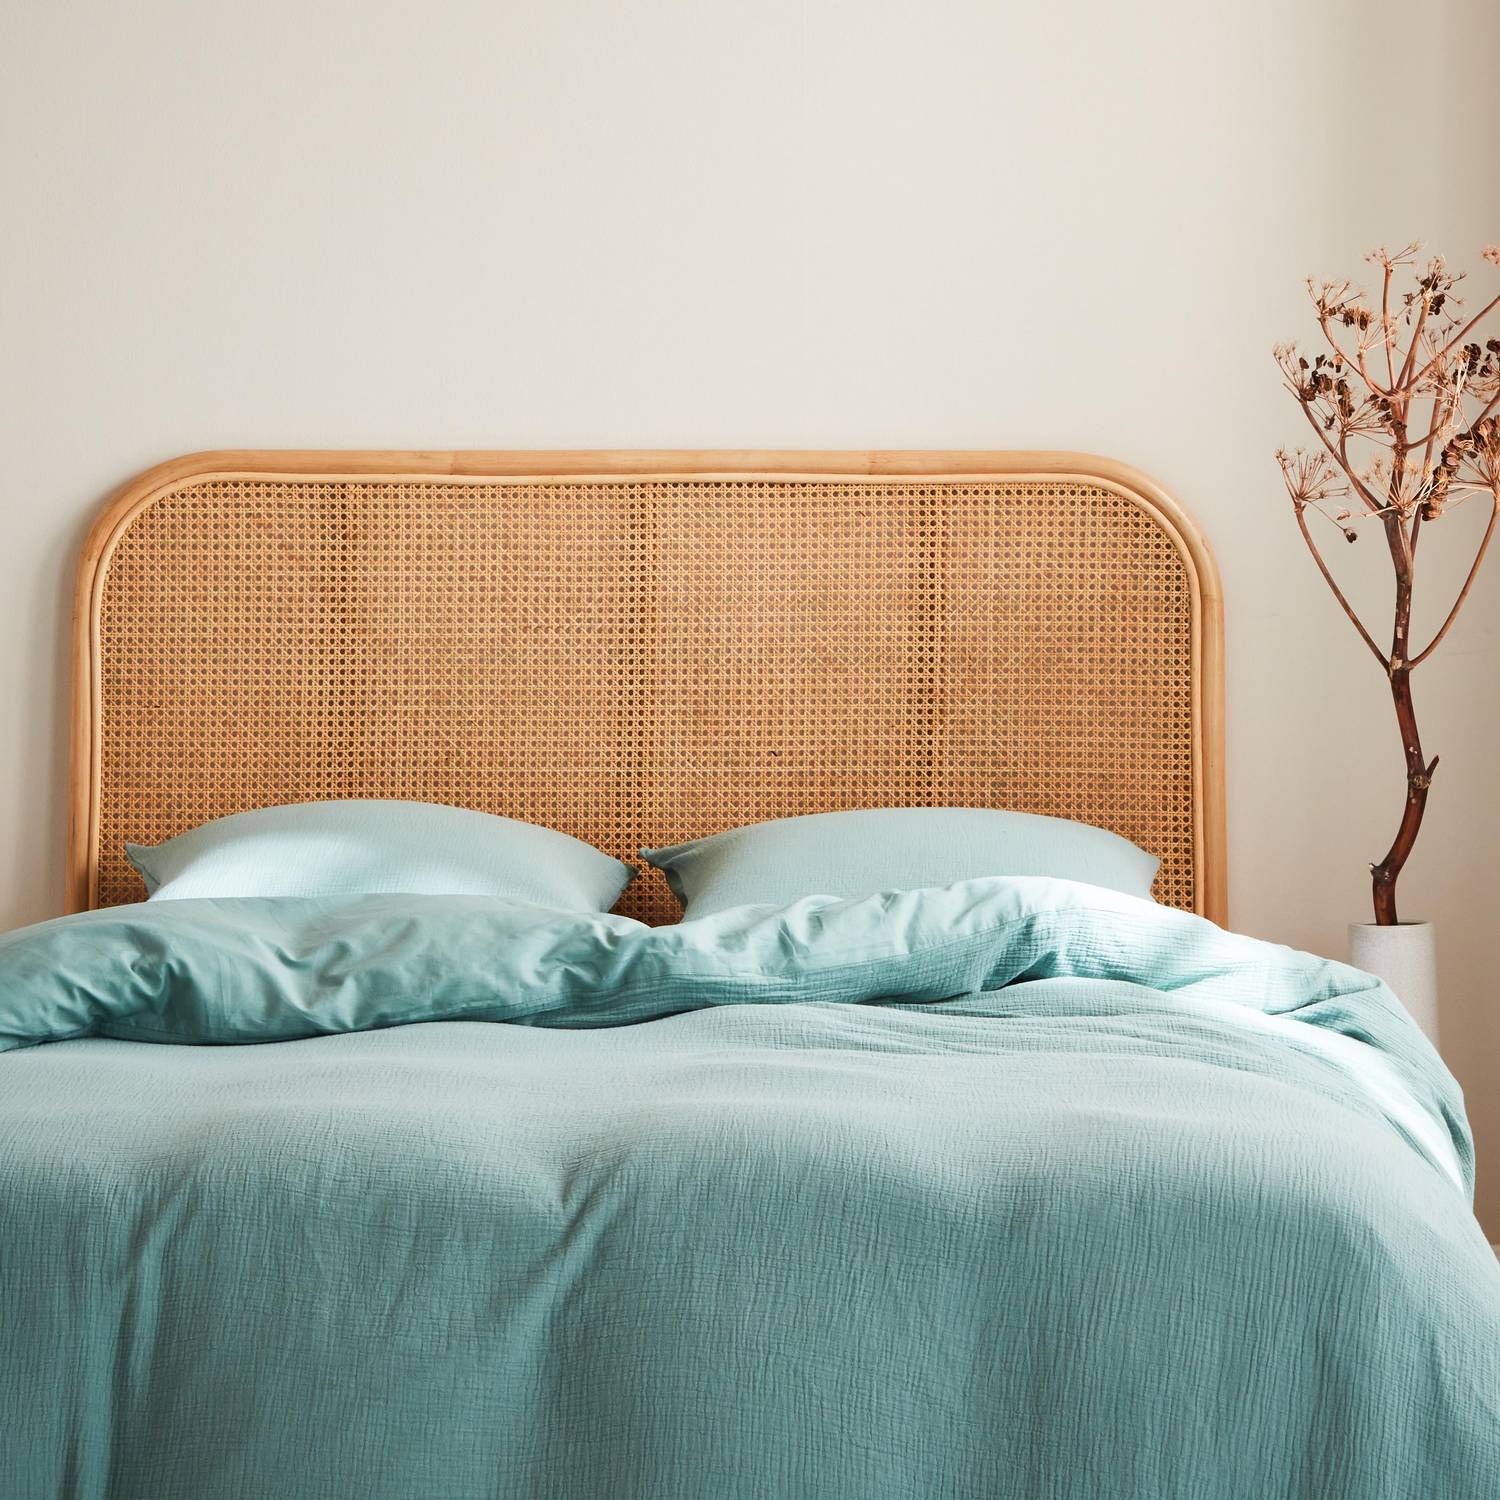 Kopfteil aus Rattan und Rohrgeflecht Natur passend für Betten mit einer Breite von 140 cm Photo2